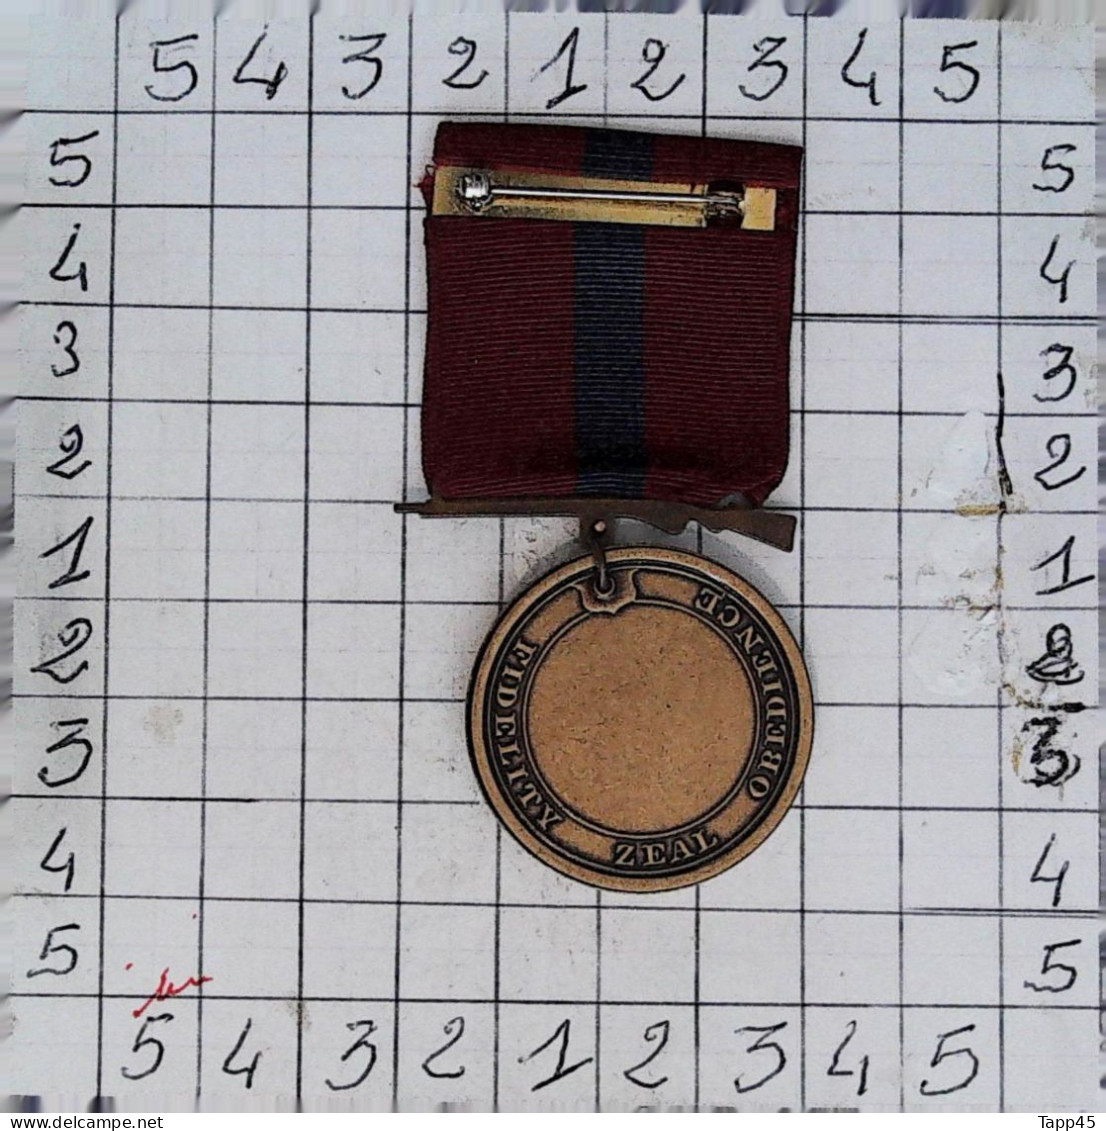 Médailles > Dispersion d'une collection vendu au prix achetée >Marine Corps Good Conduct Medal> Réf:Cl USA P 8/ 2